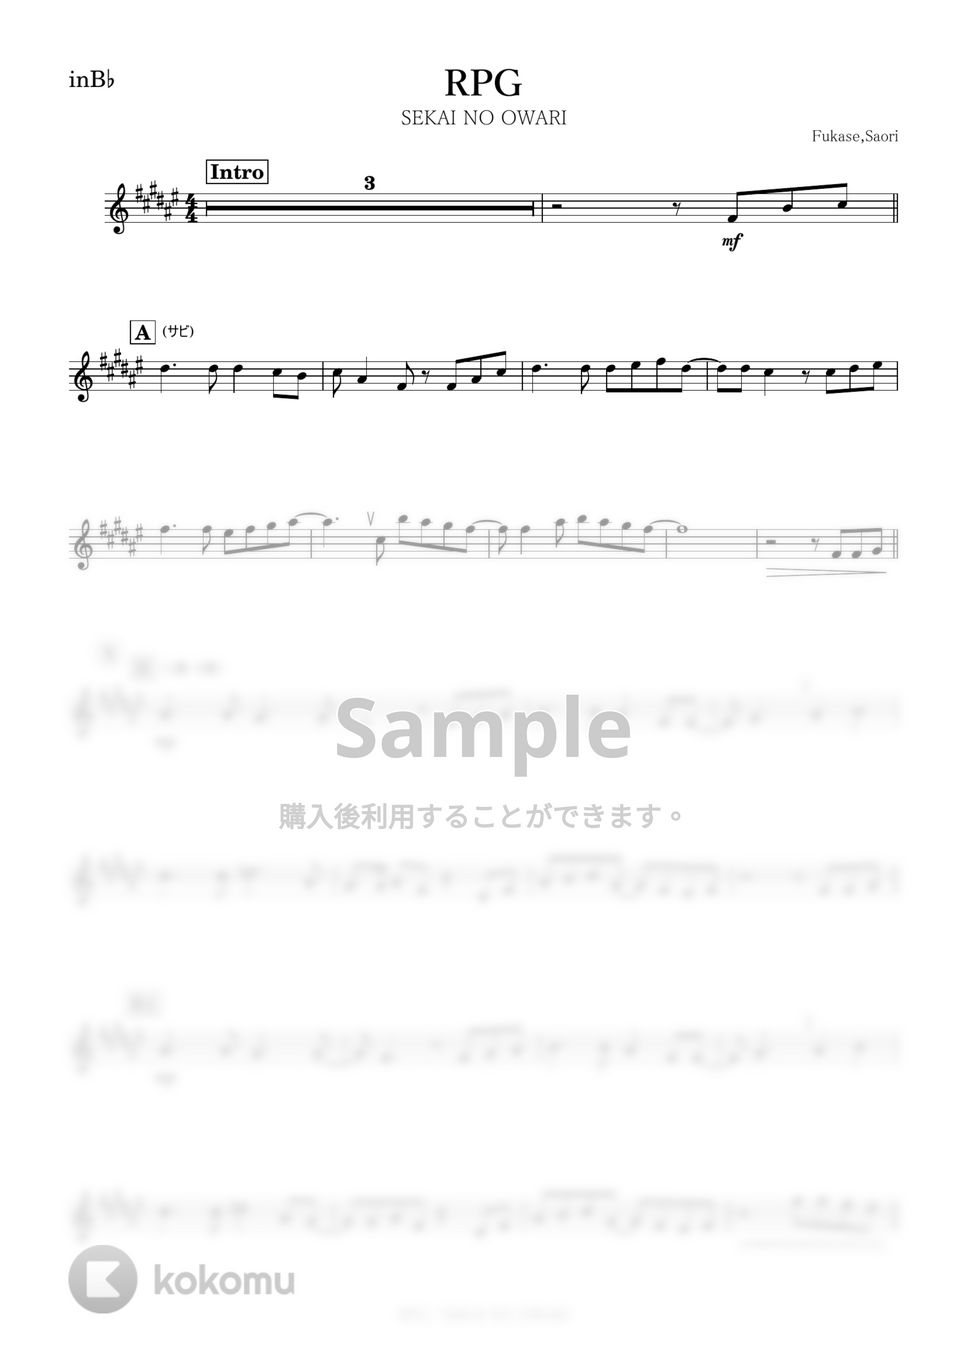 SEKAI NO OWARI - RPG (B♭) by kanamusic